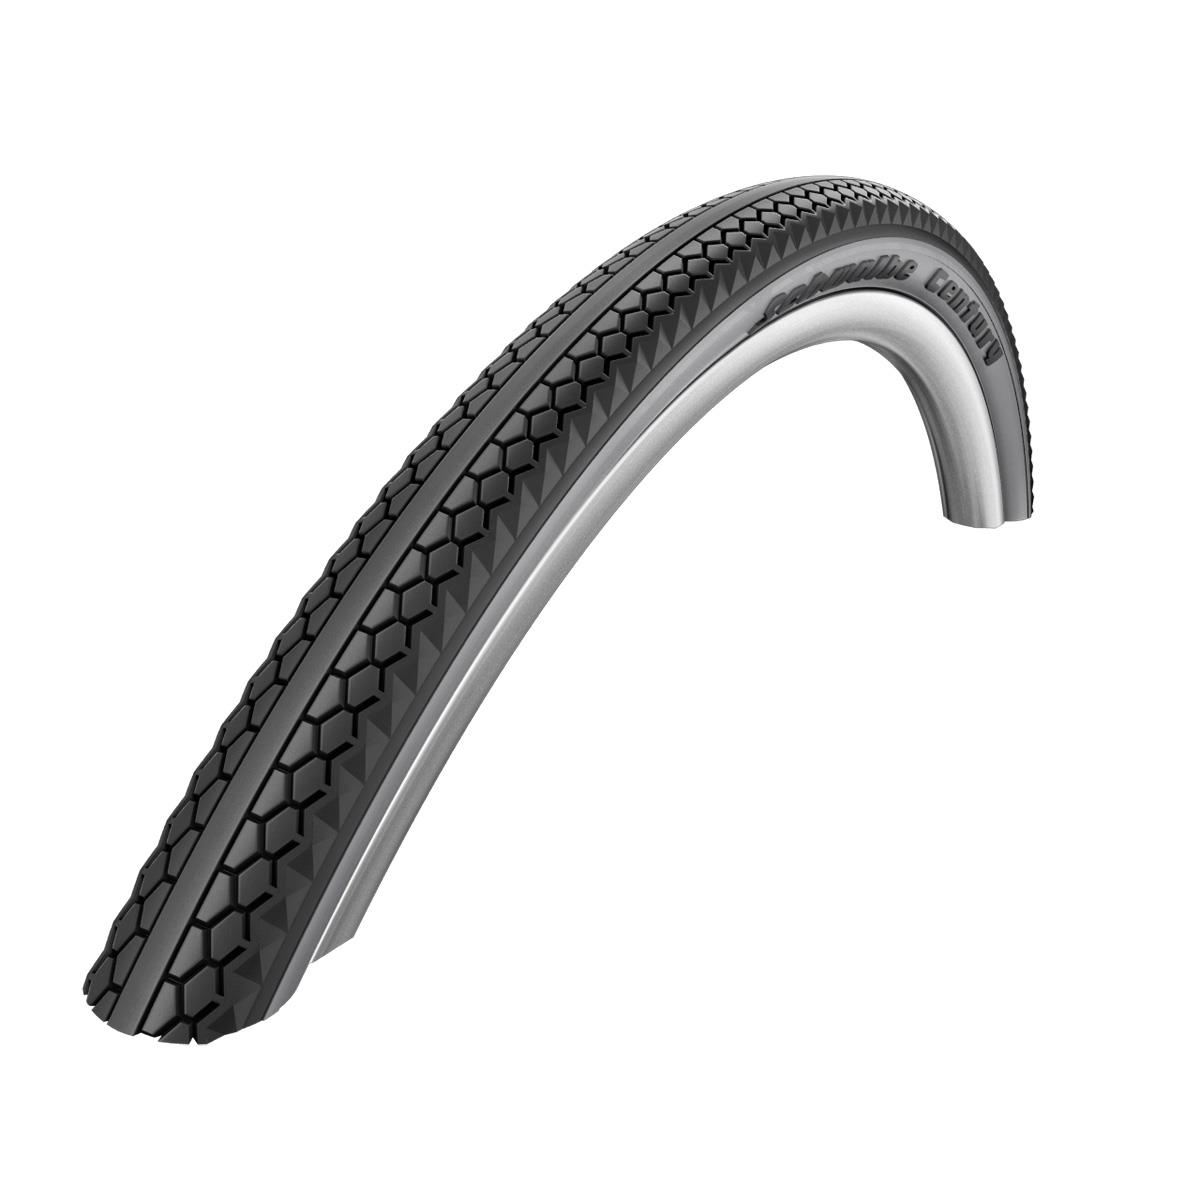 Schwalbe Century HS 458 Mountain Bicycle Tire   Wire Bead   28 x 2.0 (Black/Graphite Reflex   28 x 2.00)